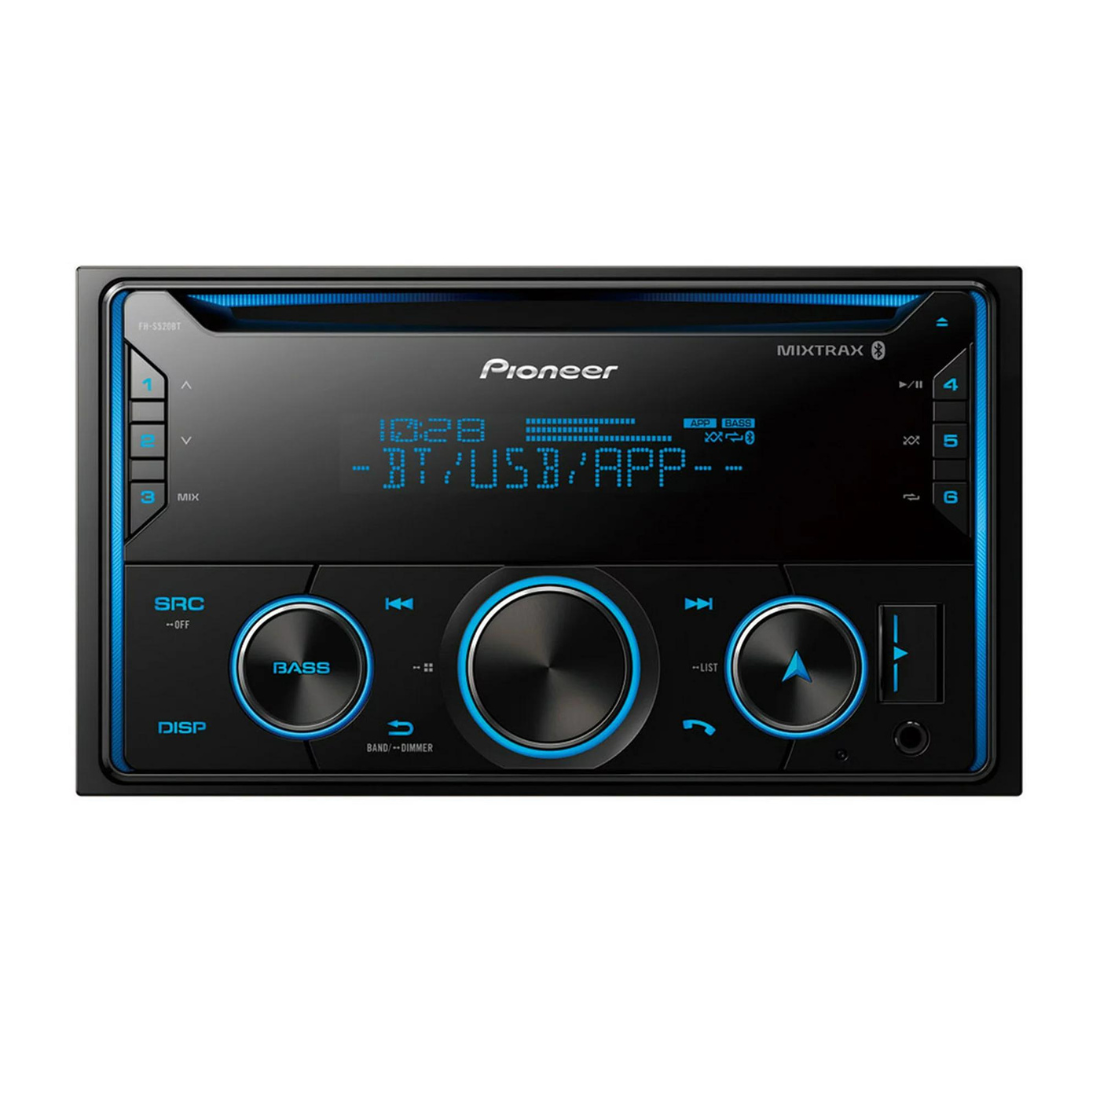 Pioneer FH-S520BT 2-DIN Car In-Dash CD MP3 Bluetooth Receiver w/ Smart Sync App